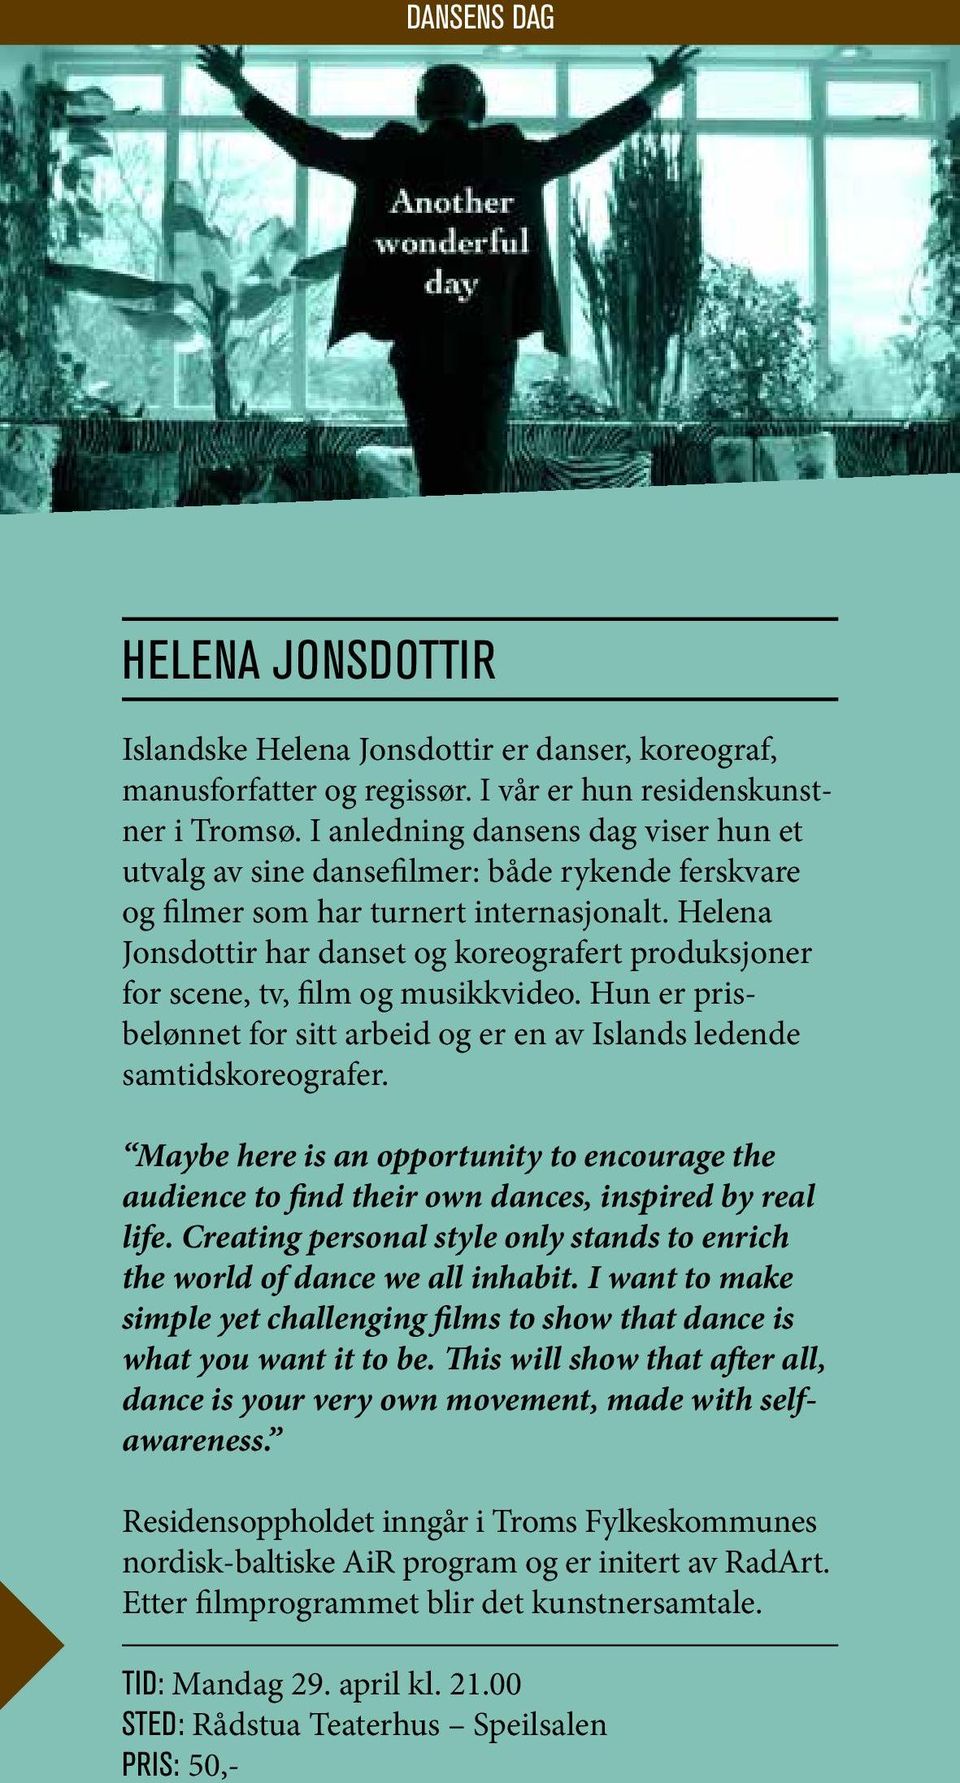 Helena Jons dottir har danset og koreografert produksjoner for scene, tv, film og musikkvideo. Hun er prisbelønnet for sitt arbeid og er en av Islands ledende samtidskoreografer.